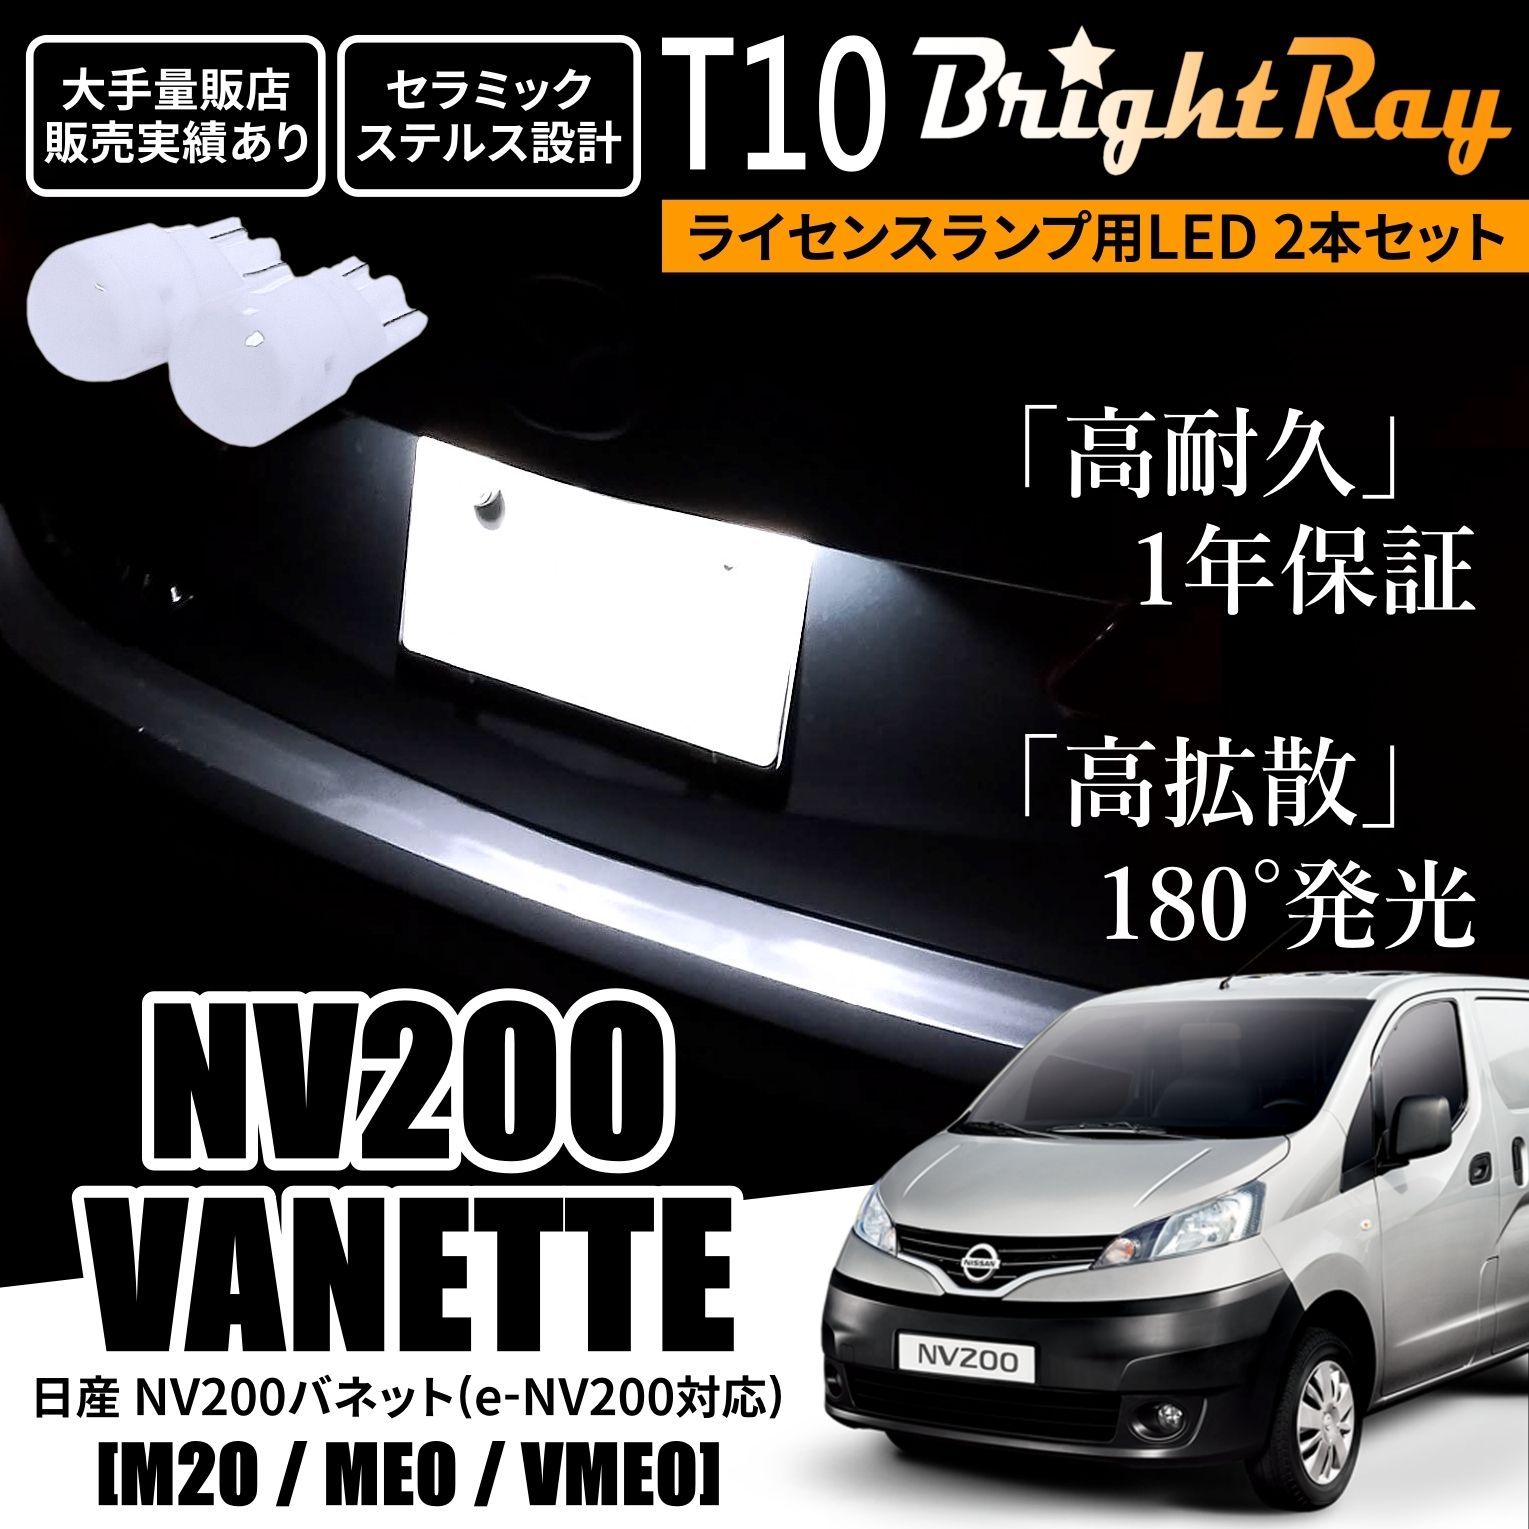 日産 NV200 バネット M20 ME0 VME0 T10 LED ナンバー灯 - メルカリ